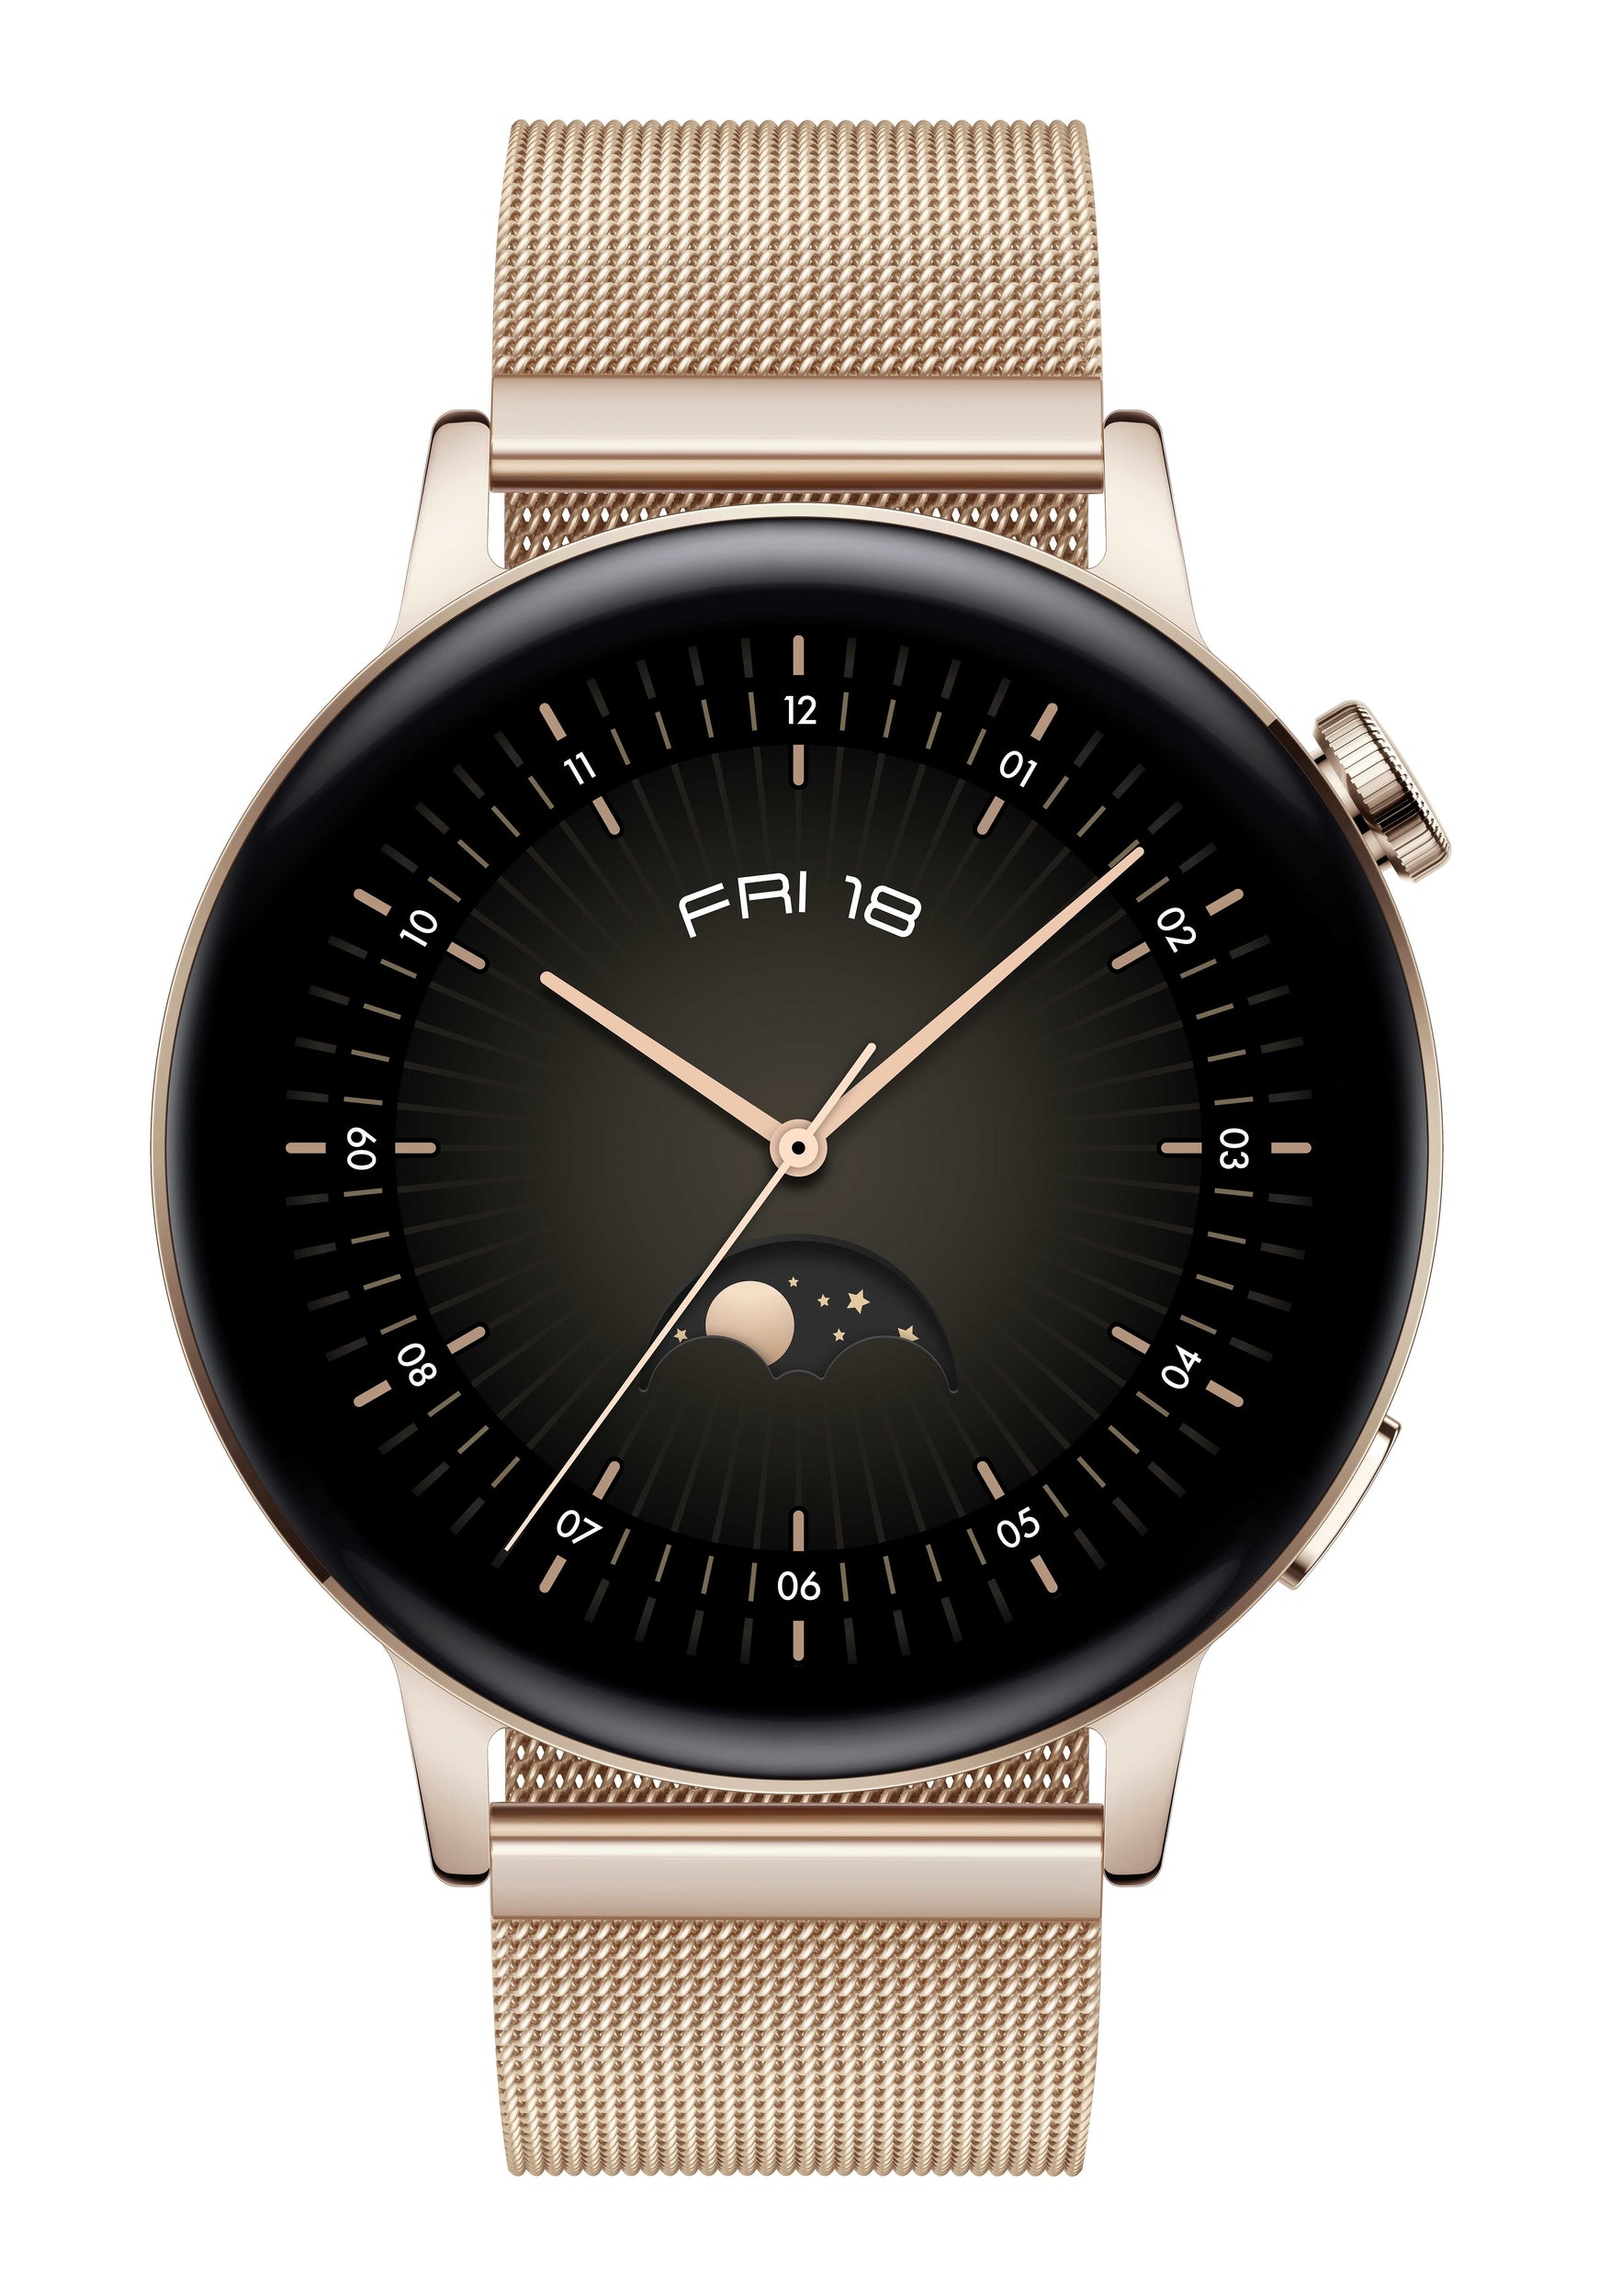 Smartwatch Huawei 55027159 Watch Gt 3 42Mm Gold